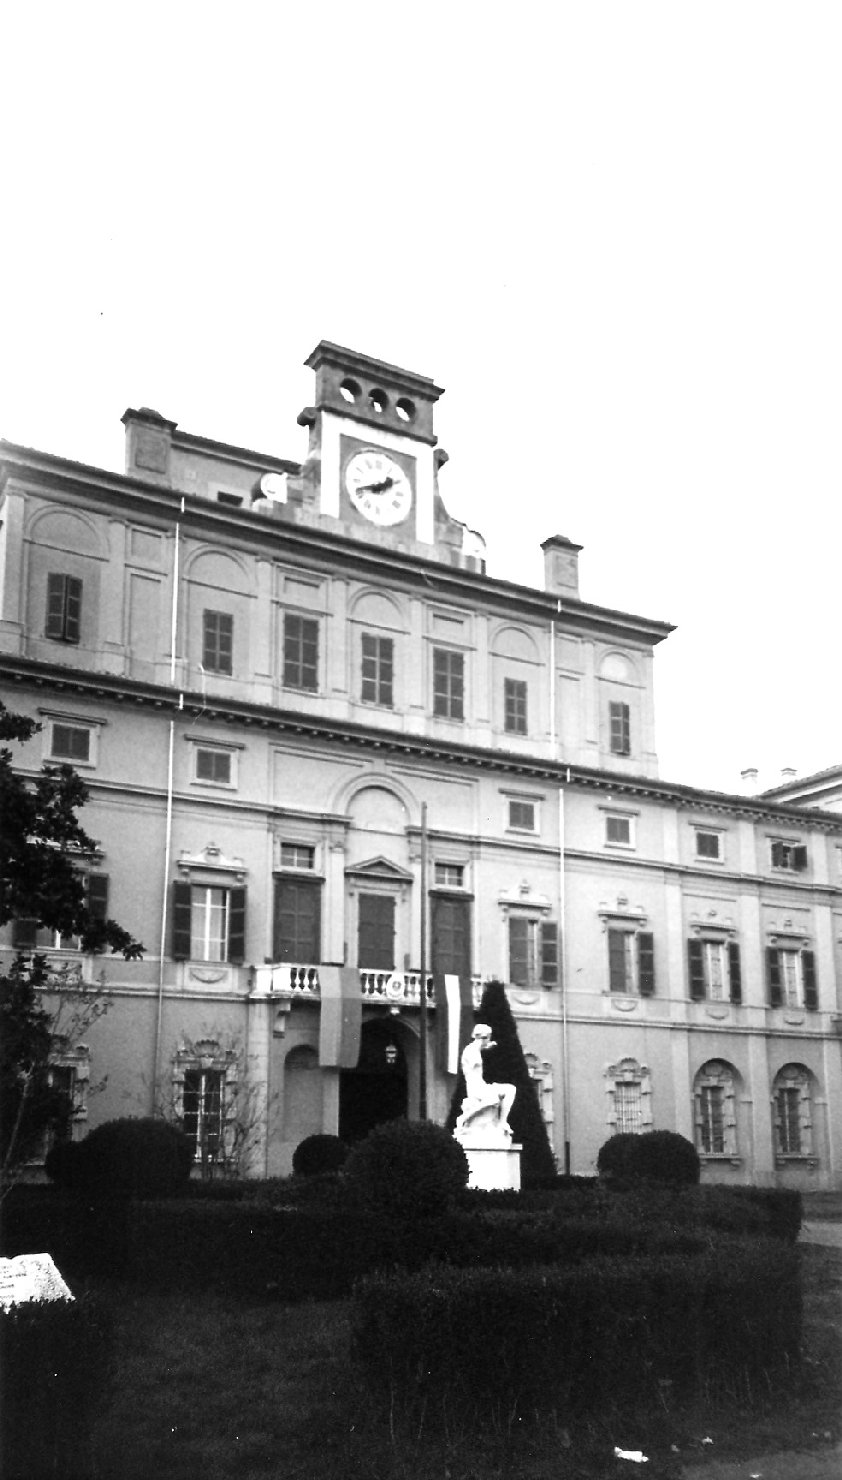 Palazzo Ducale/ Parco Ducale (palazzo) - Parma (PR) 